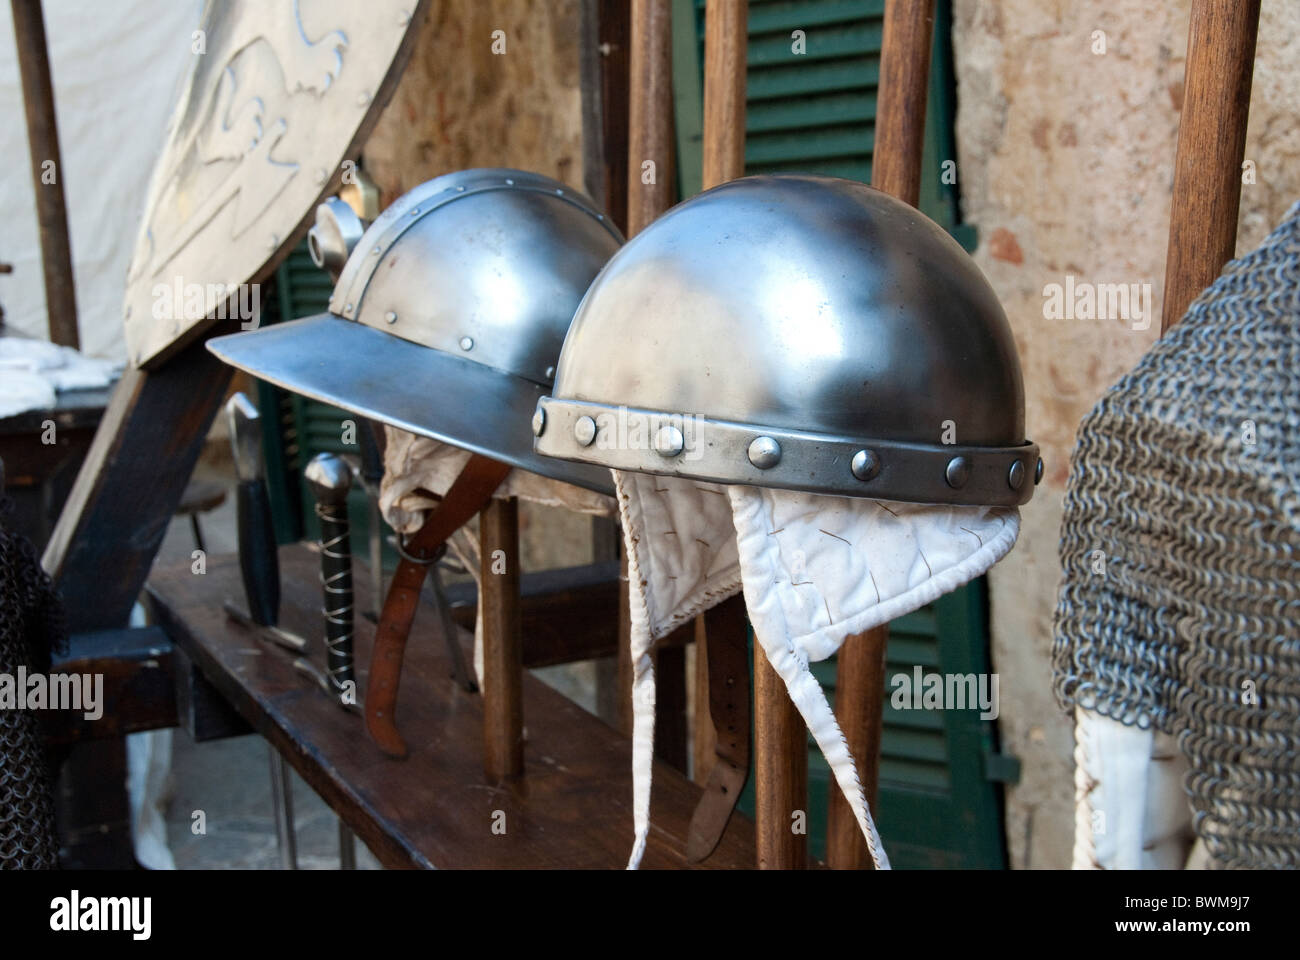 Metal armor Festival médiéval, Monteriggioni, province de Sienne, Toscane Italie Banque D'Images